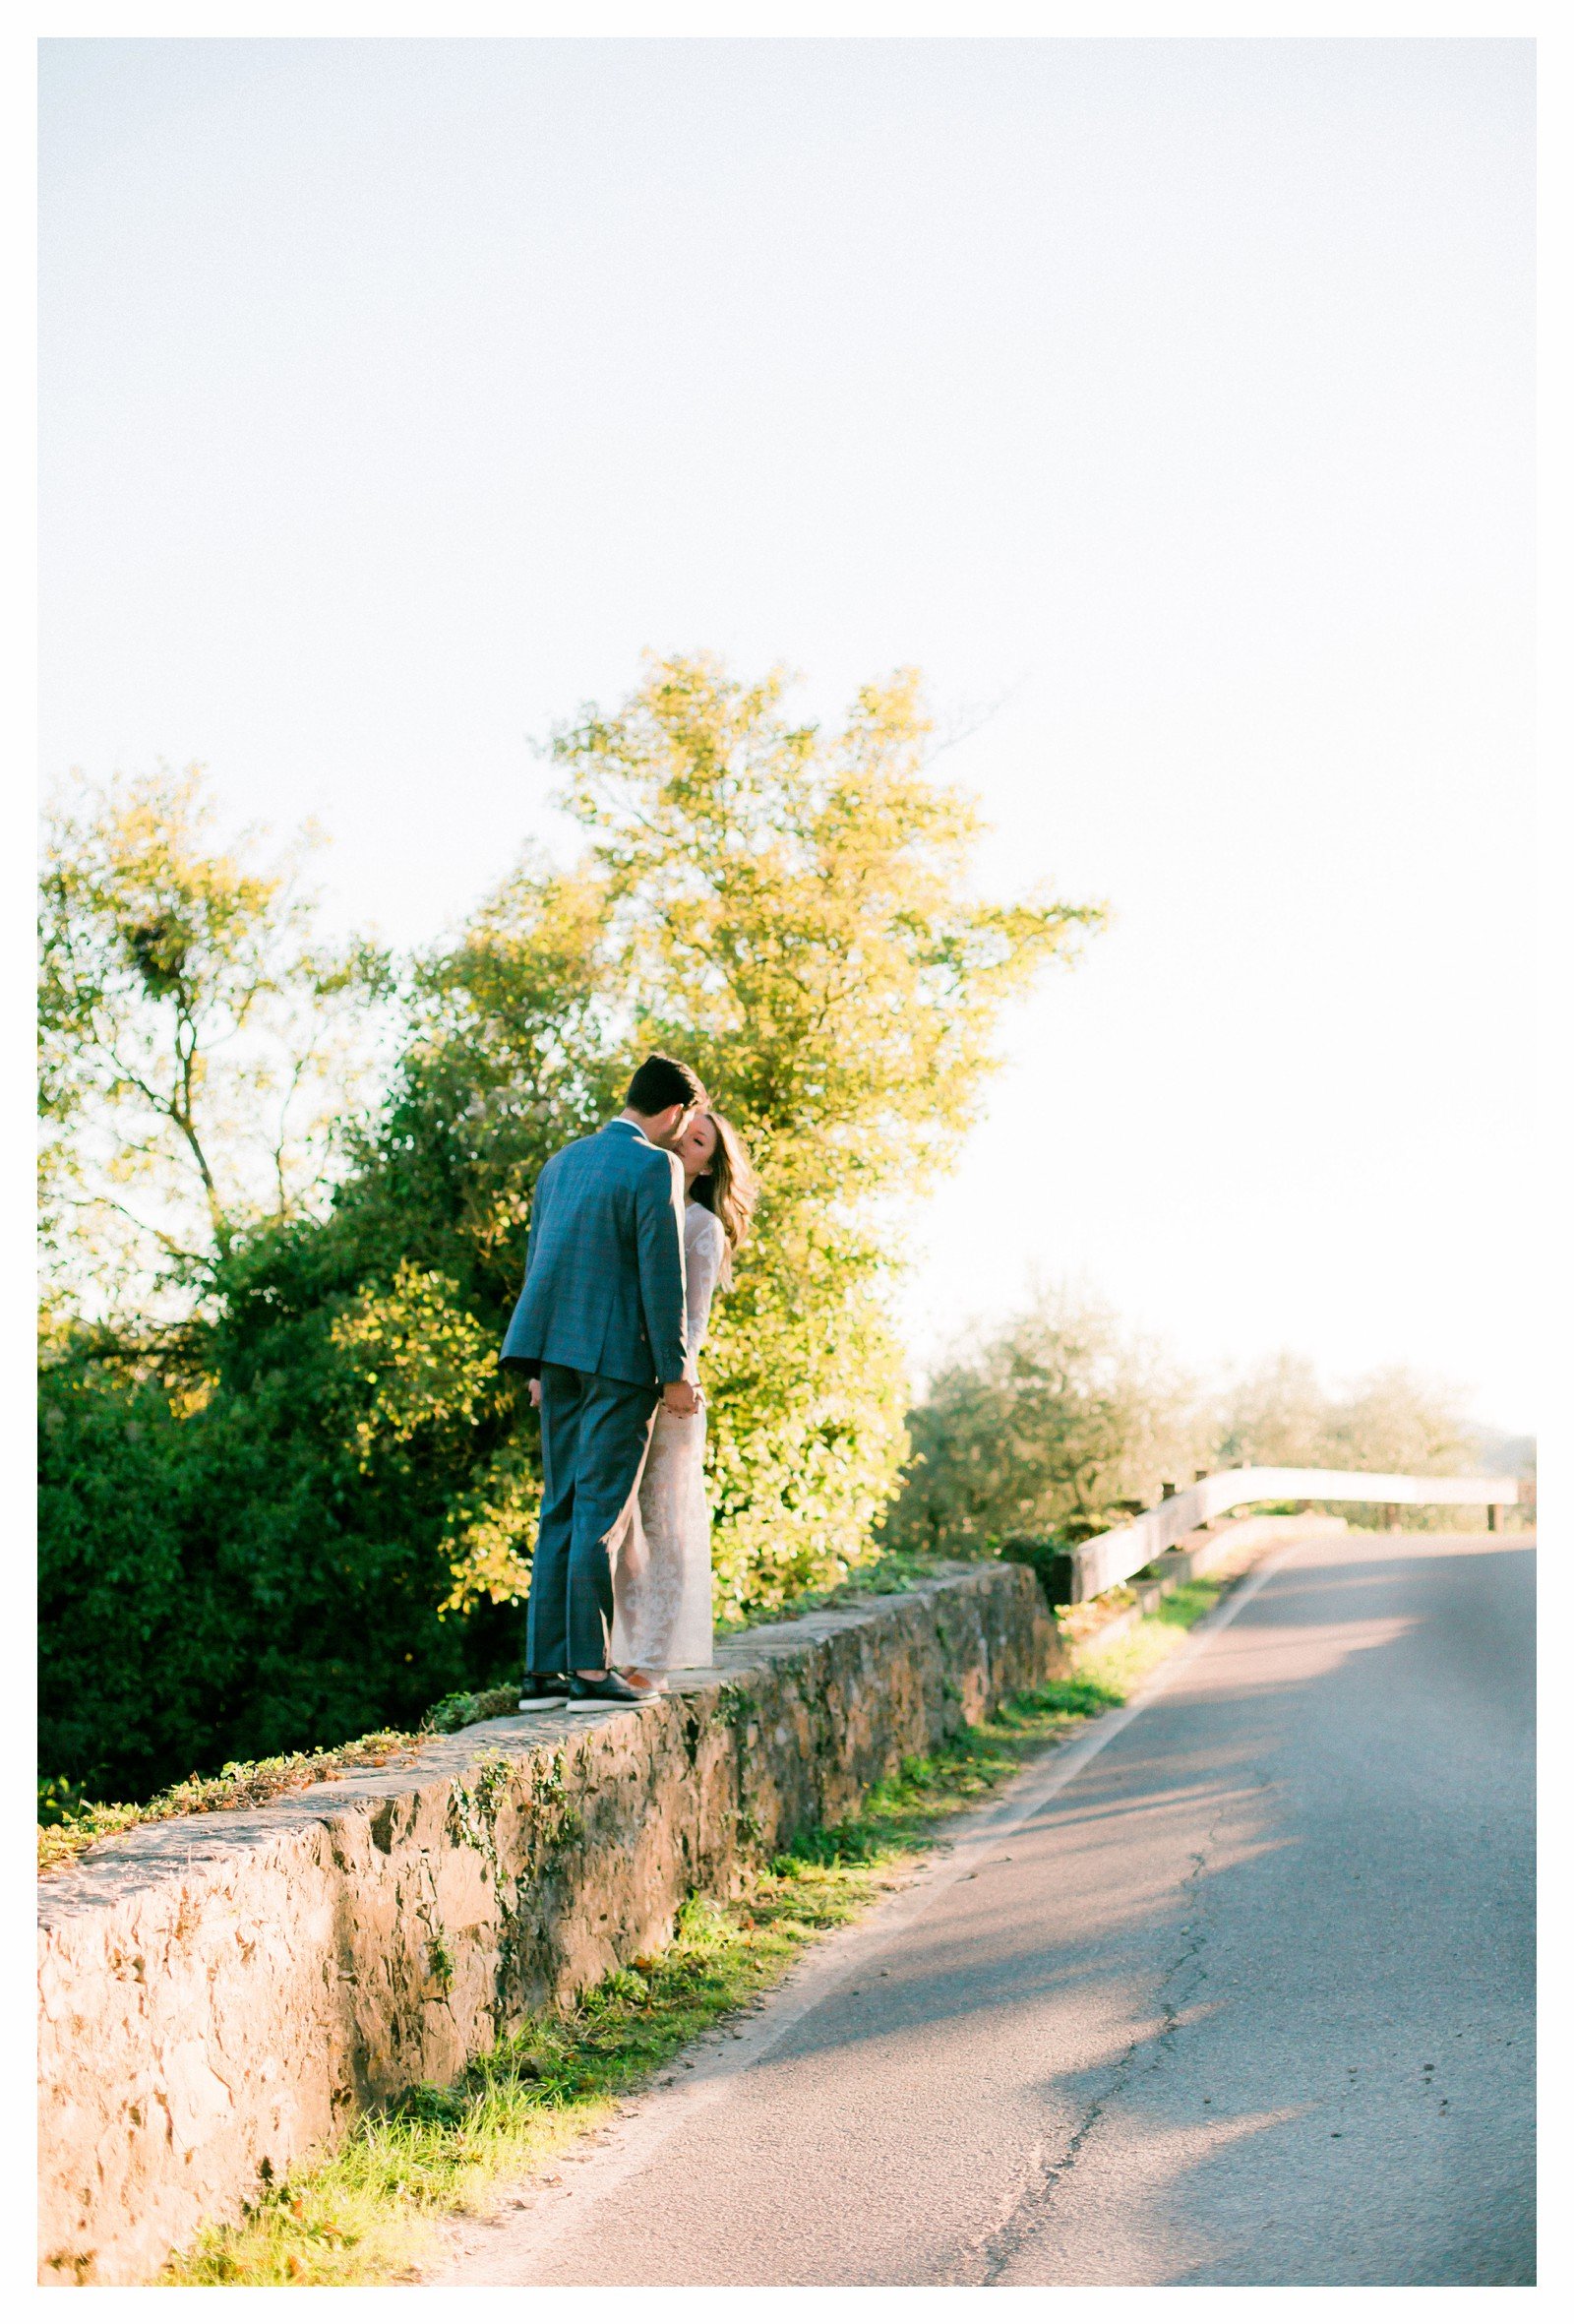 tuscany-countryside-val-dorcia-wedding-couple-photoshoot-photographer_0022.jpg